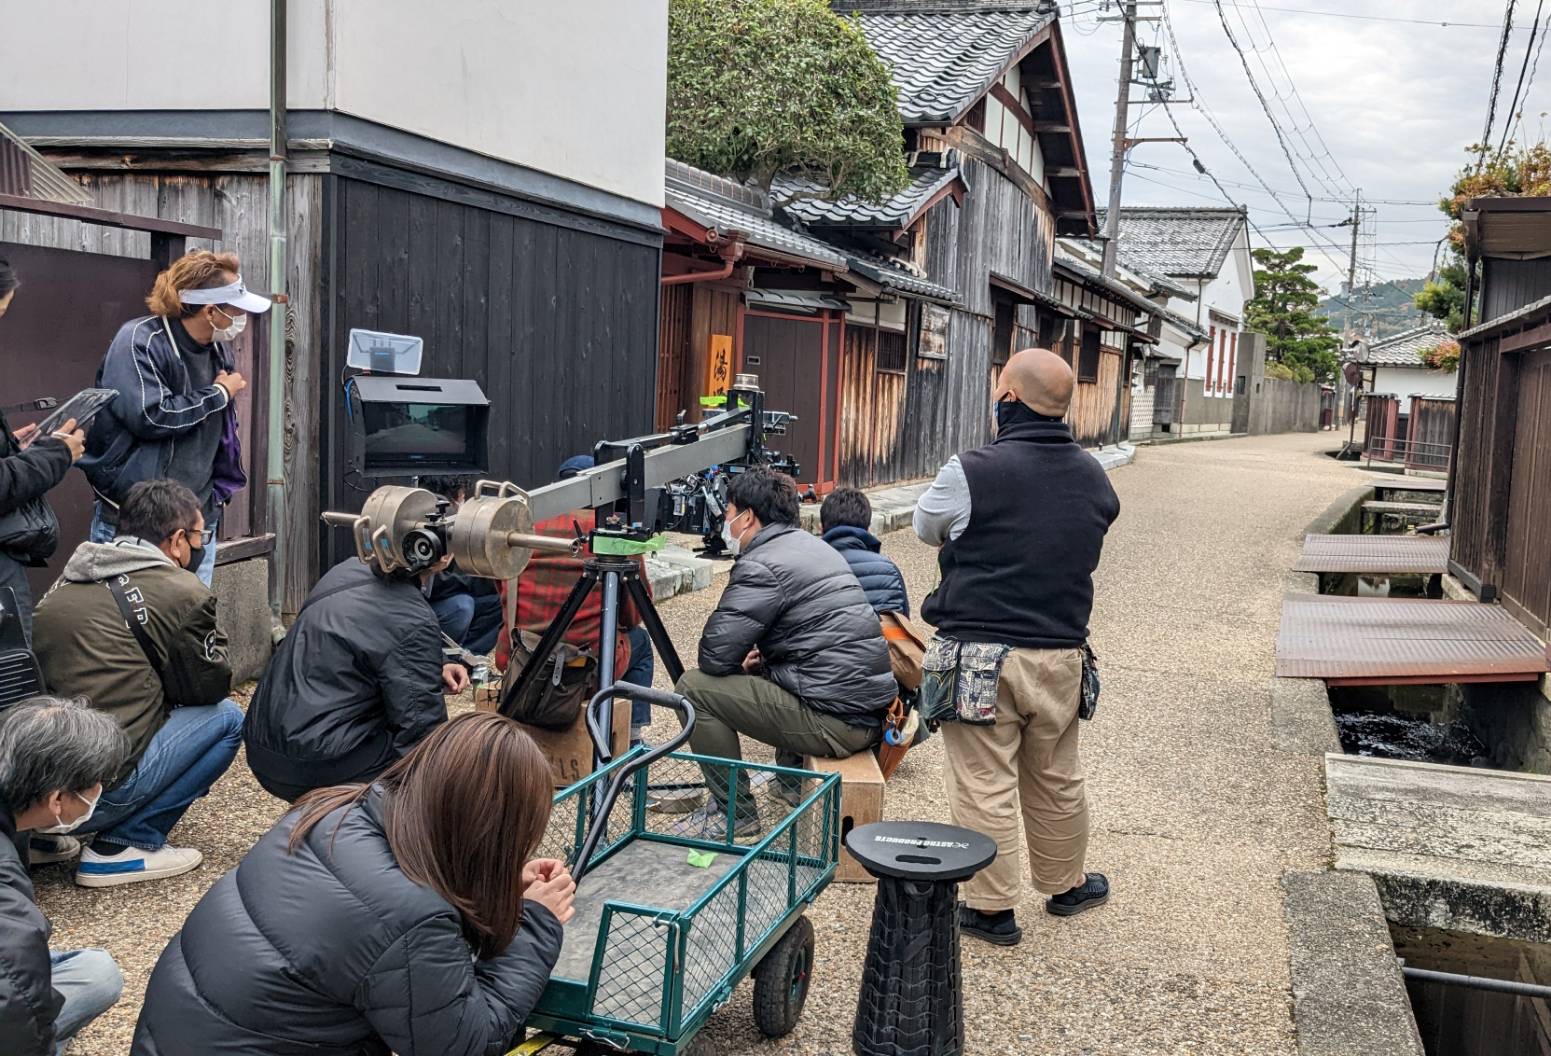 【ドラマ撮影情報】スピンオフドラマ「湯道への道」の撮影が五個荘近江商人屋敷でありました。